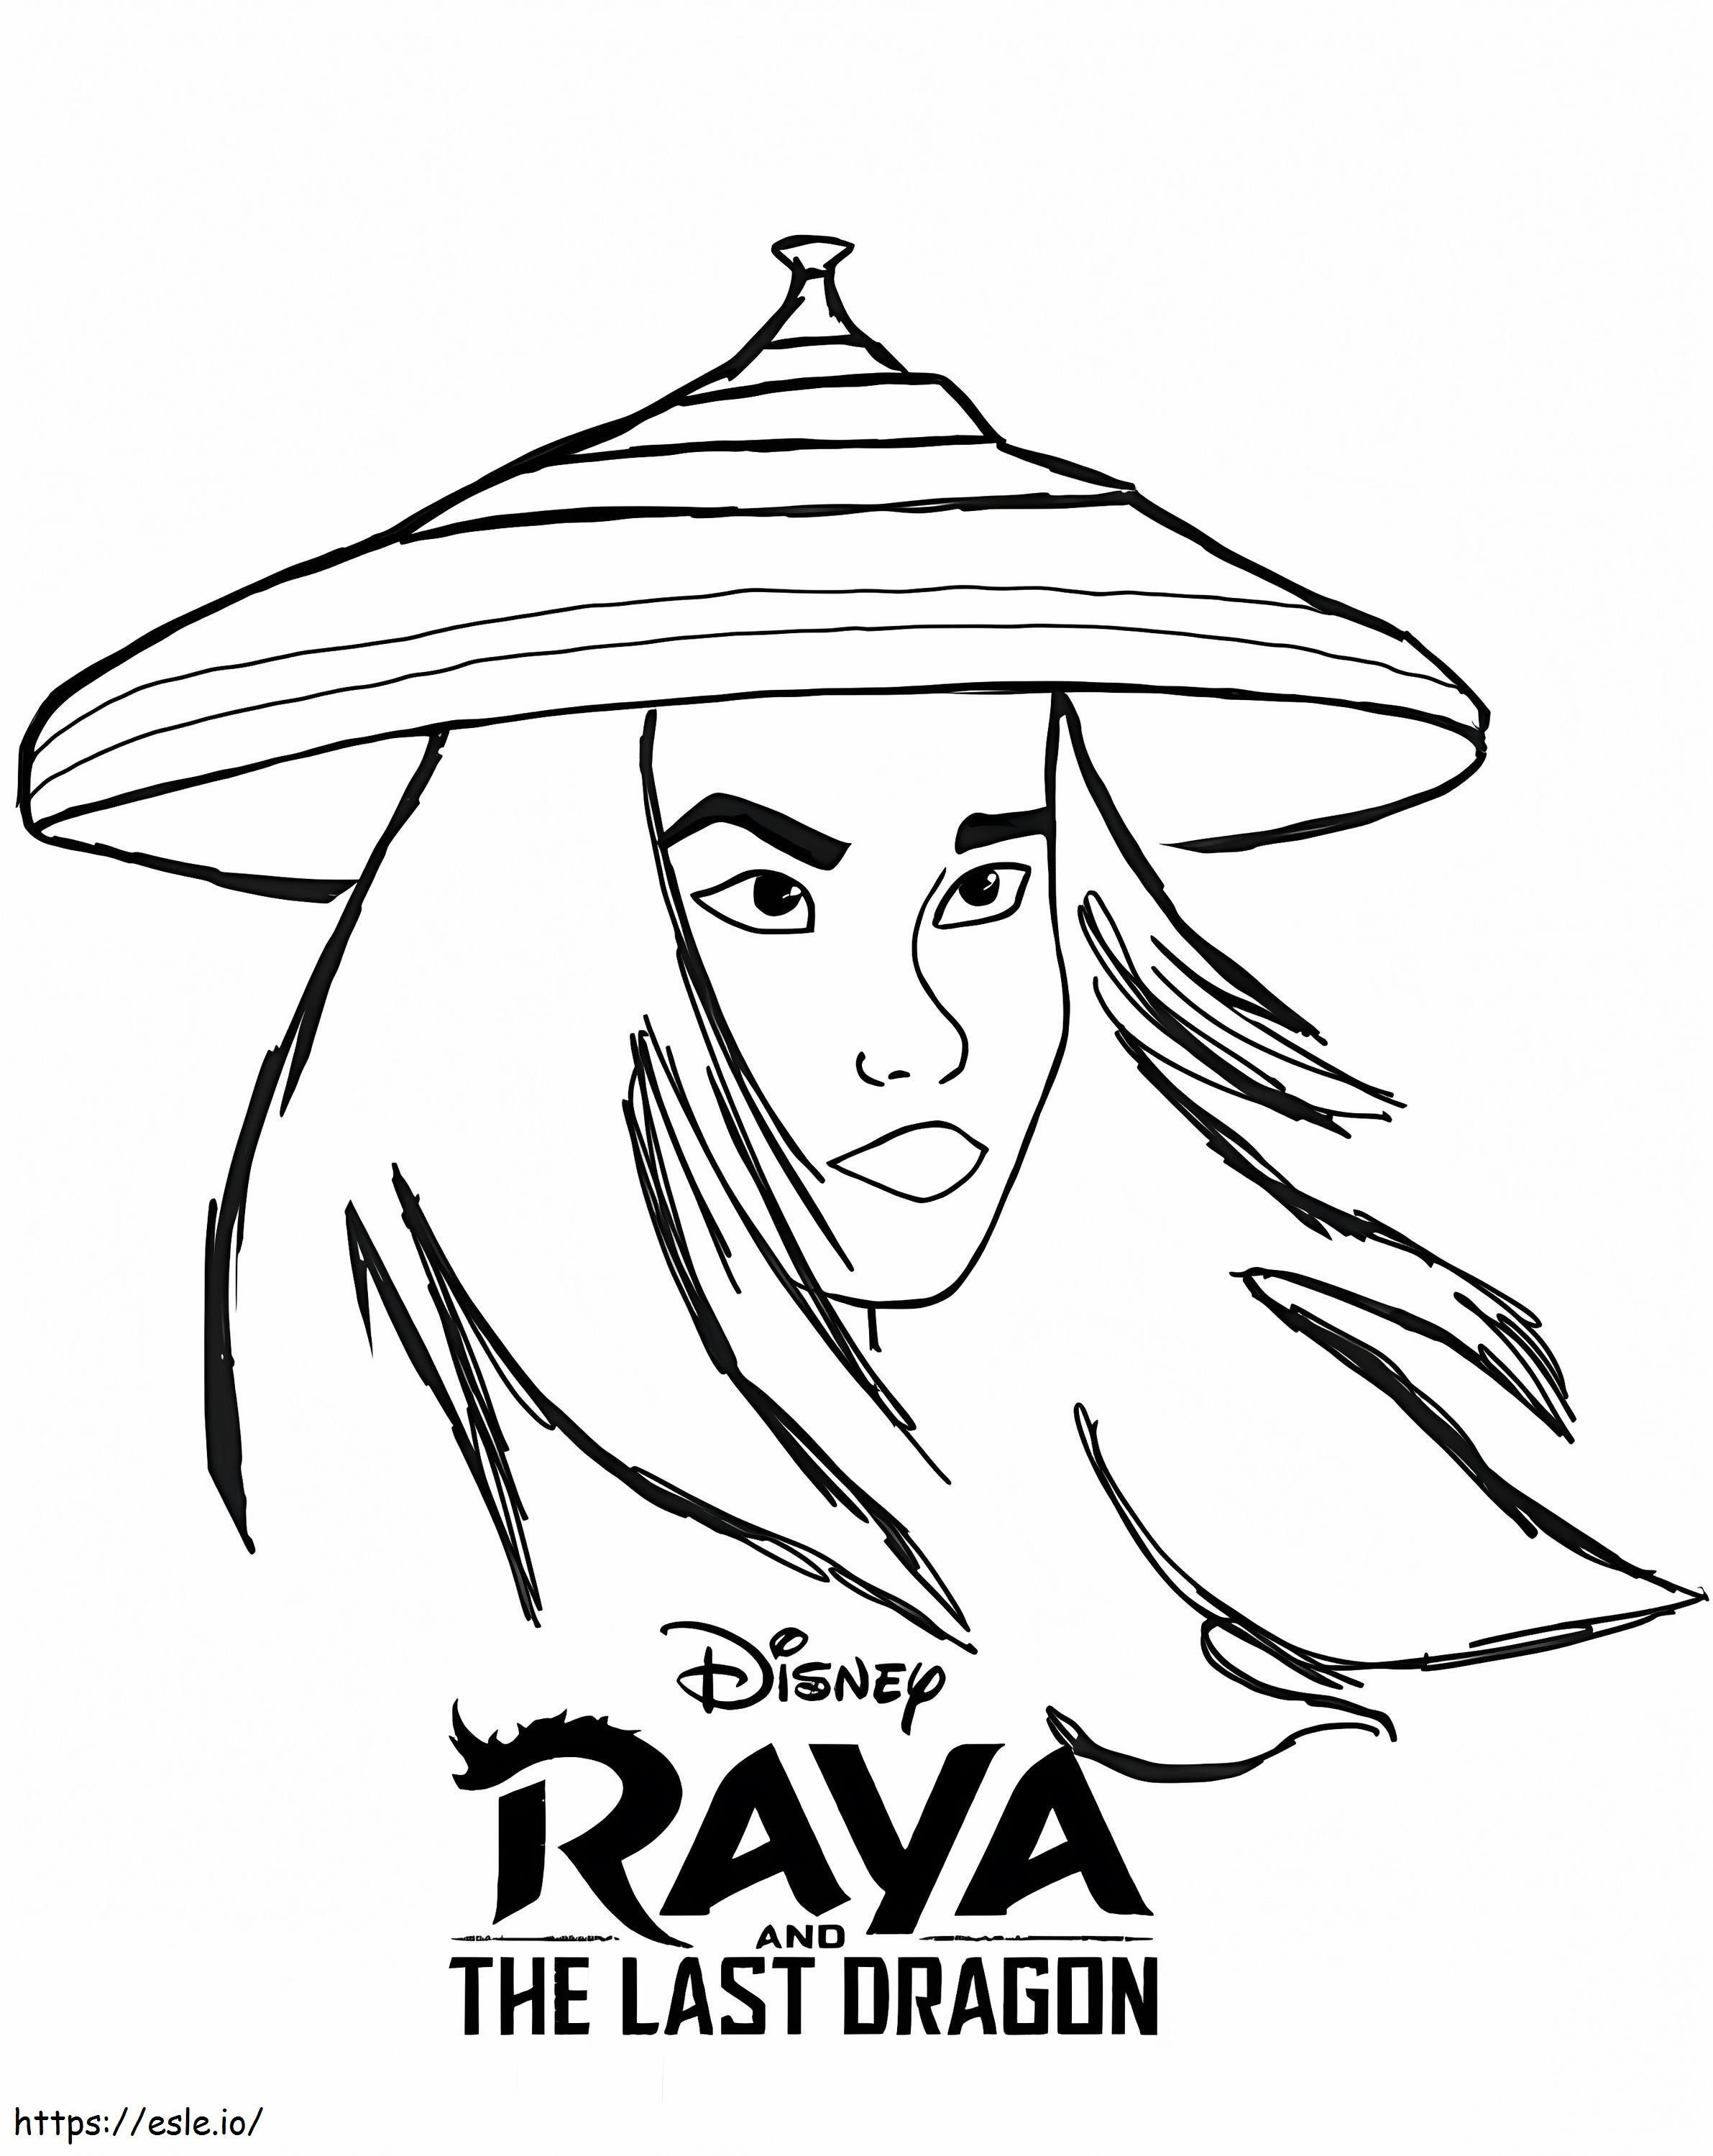 Raya und der letzte Drache 7 ausmalbilder